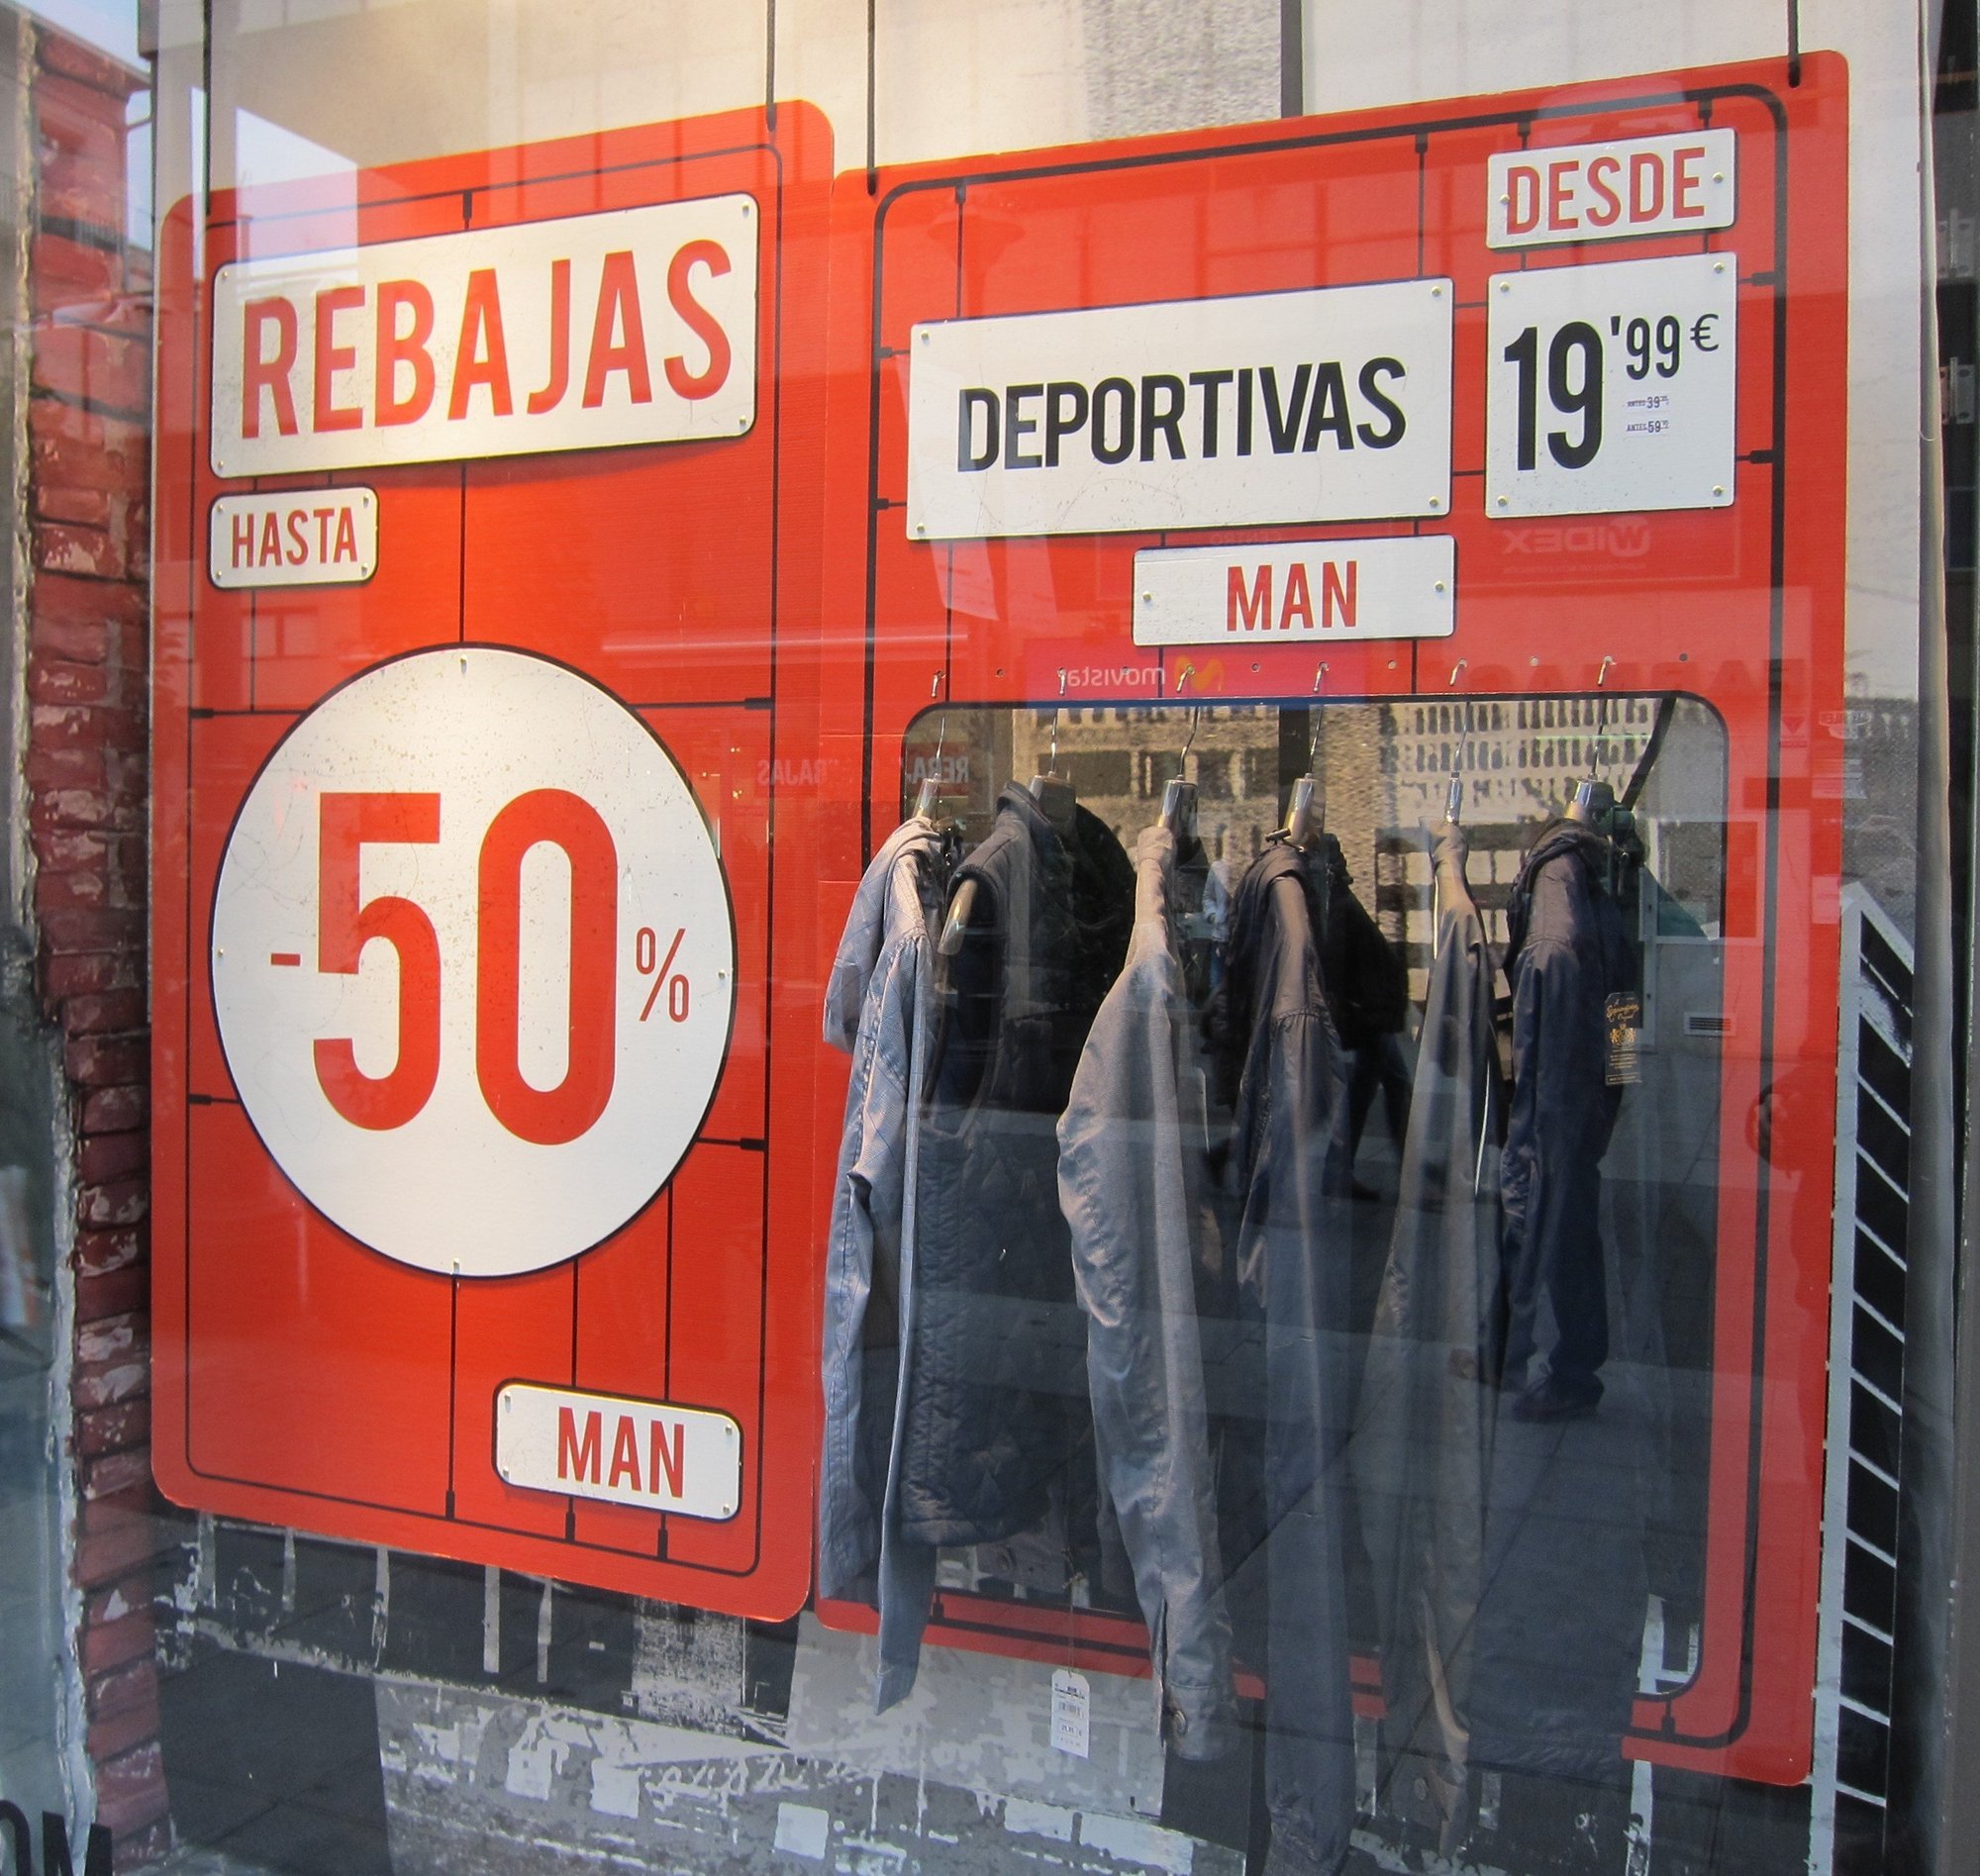 El comercio andaluz registra impresiones «positivas» los primeros días de rebajas